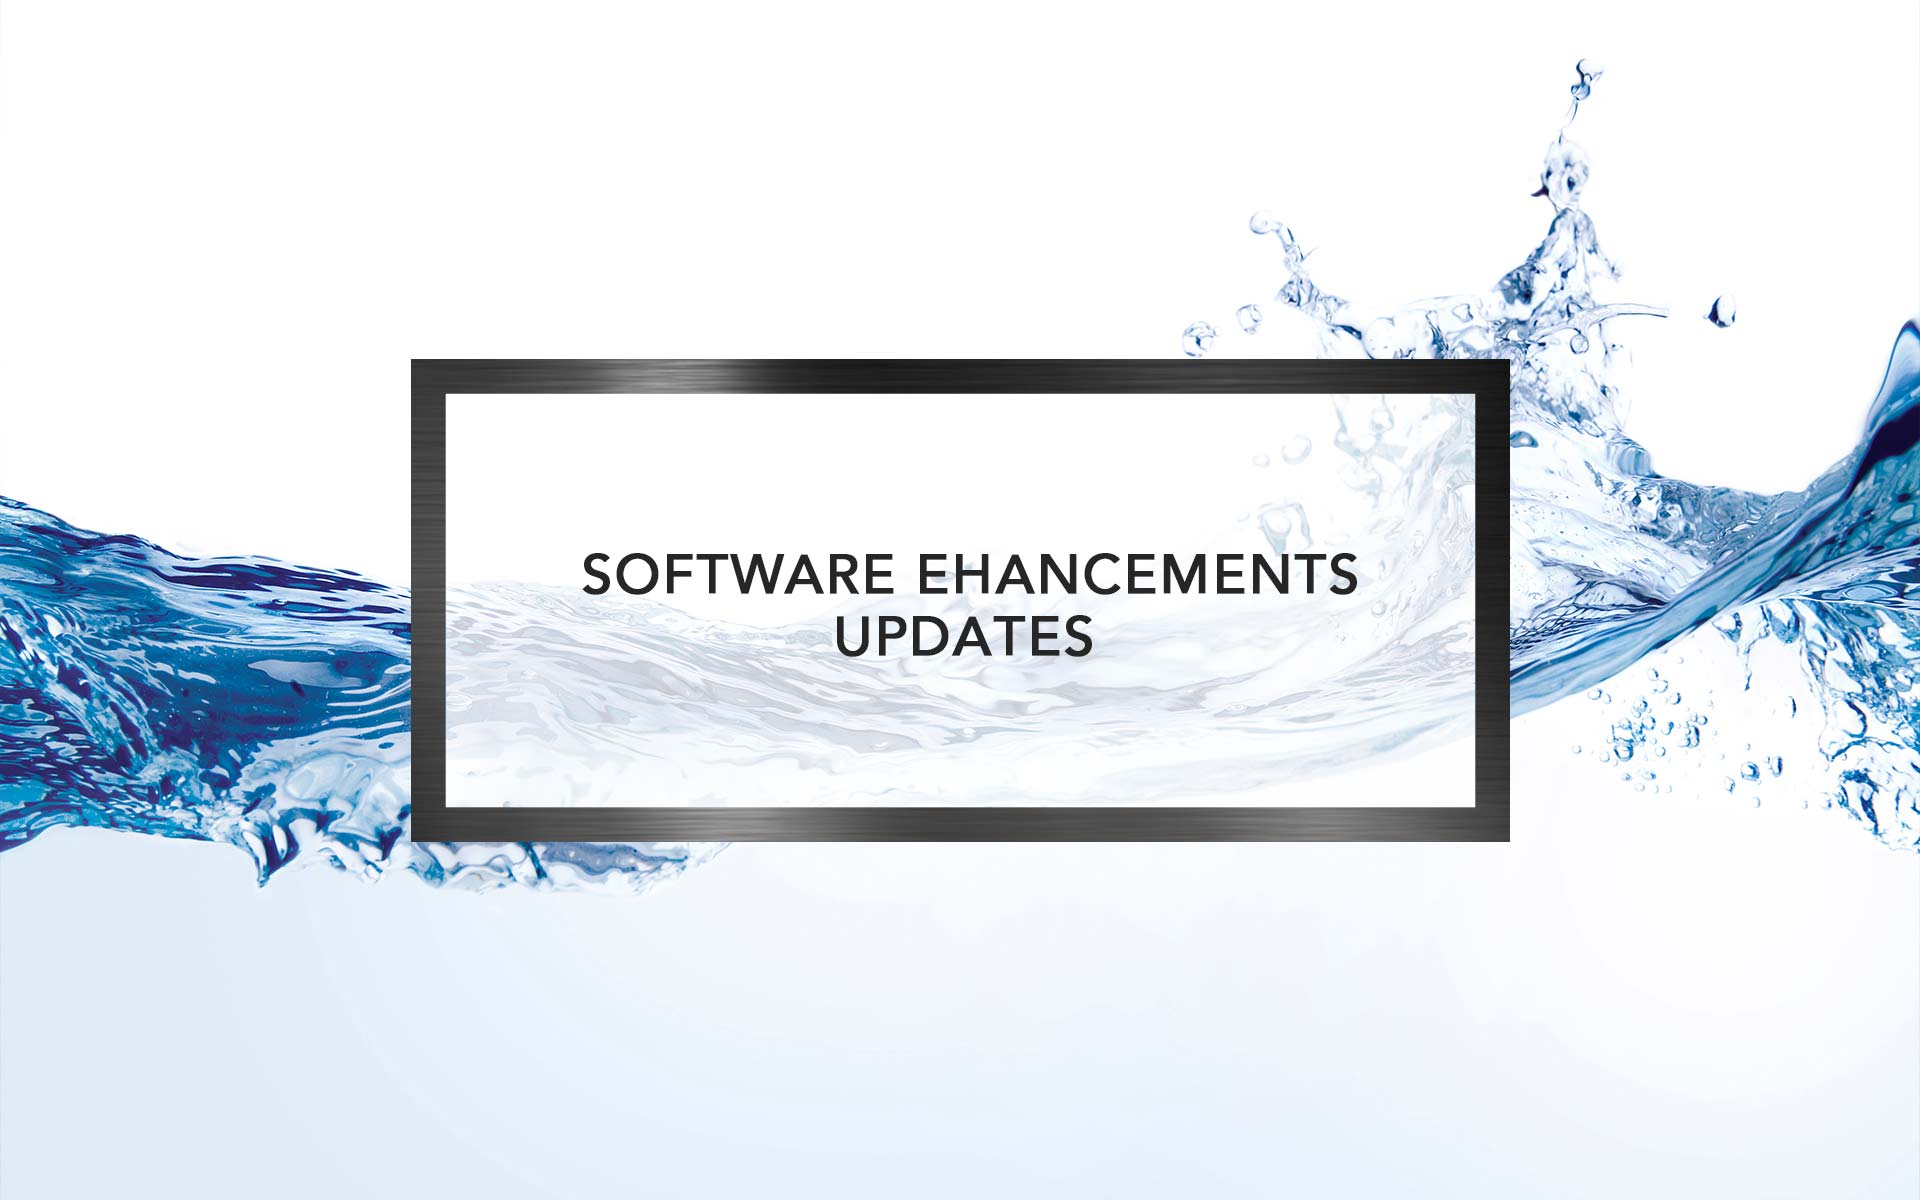 Software Enhancements Update